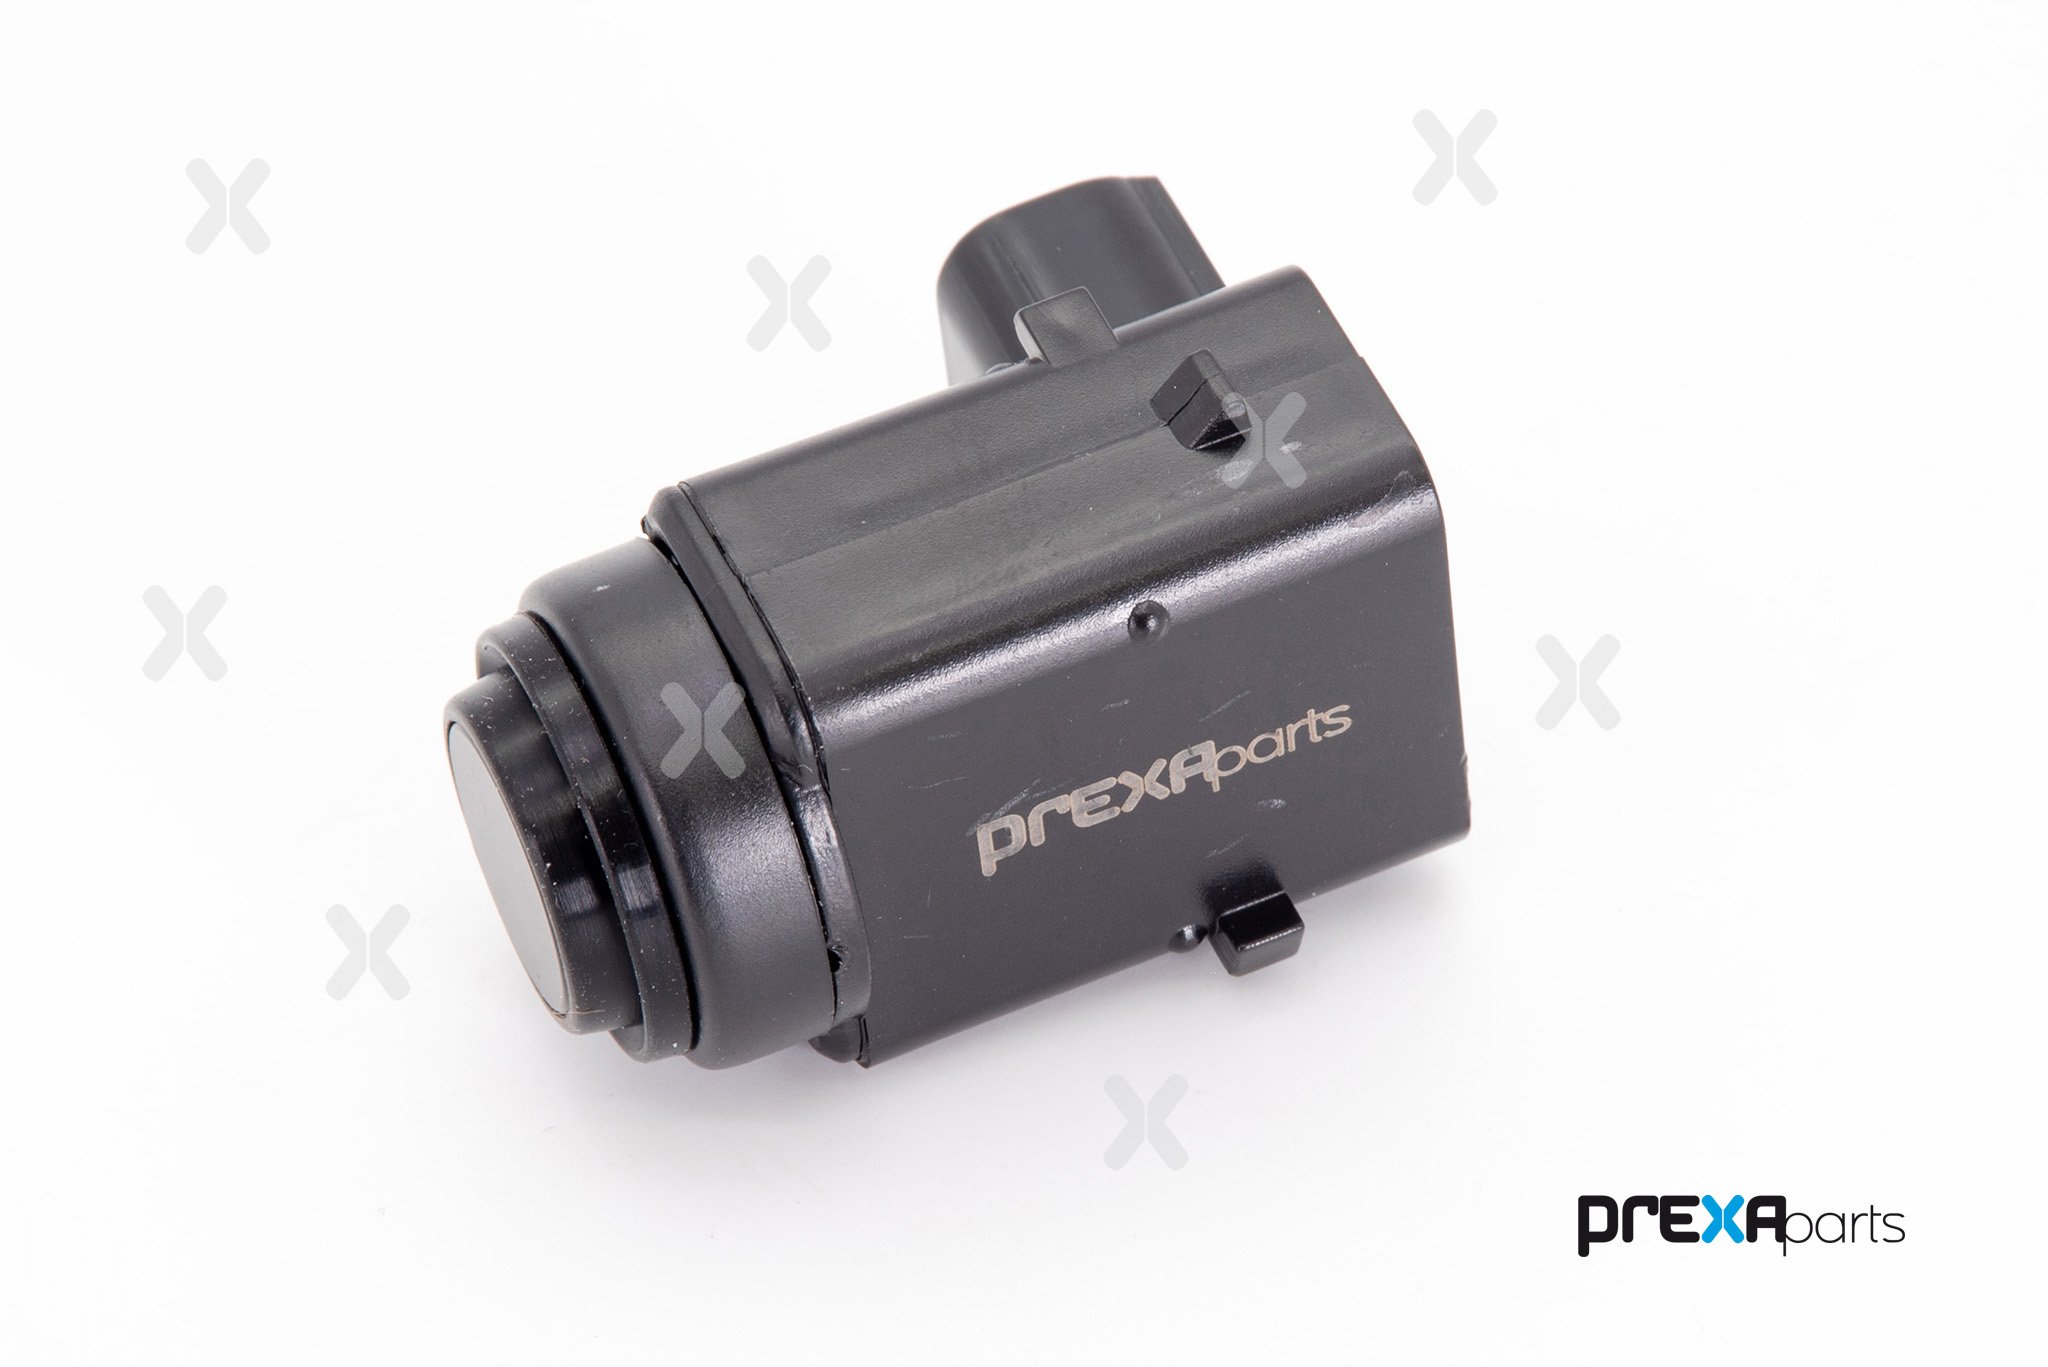 PREXAparts P403030